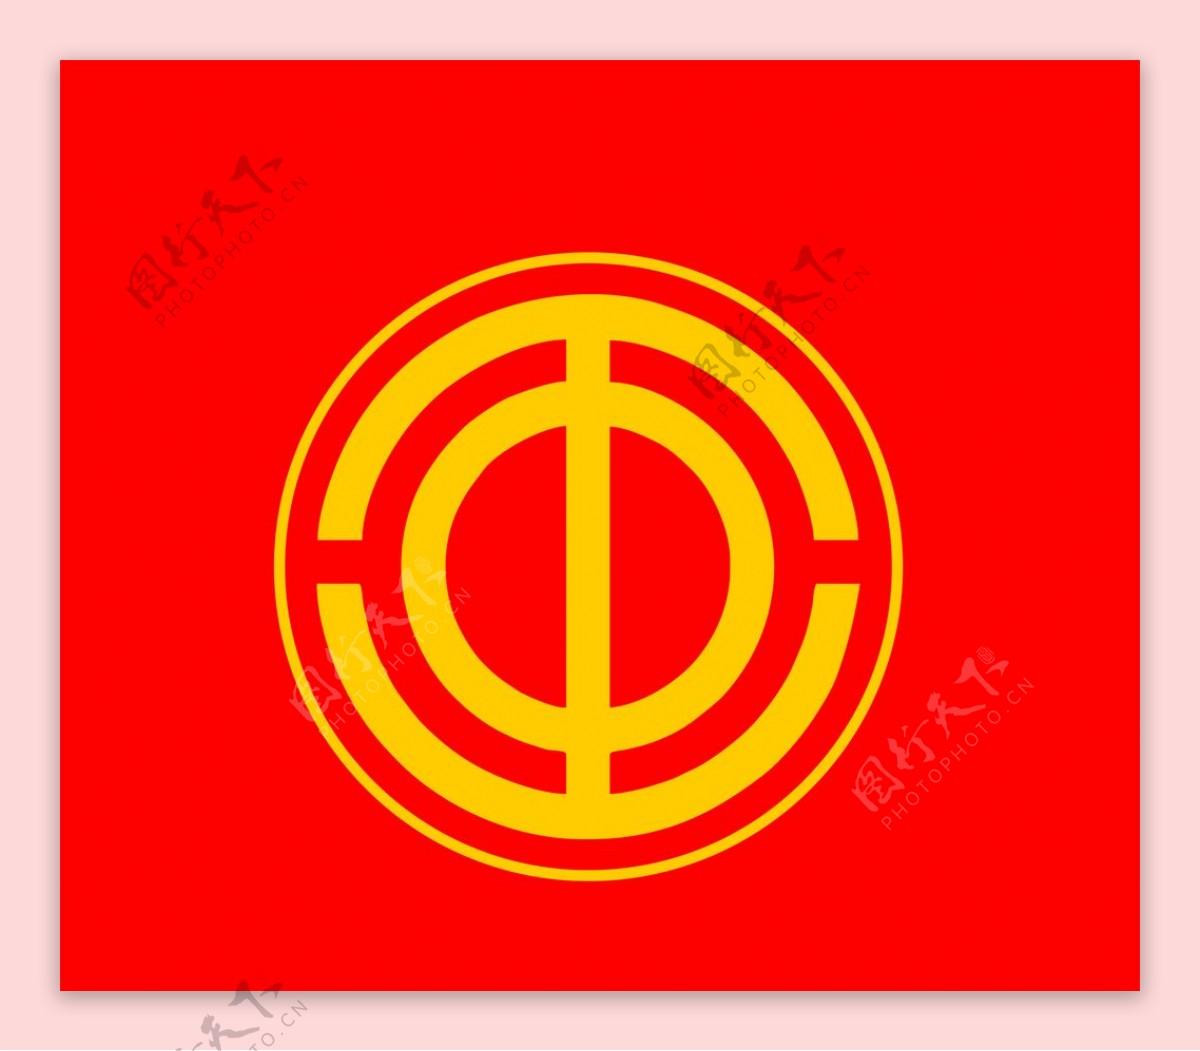 工会标志